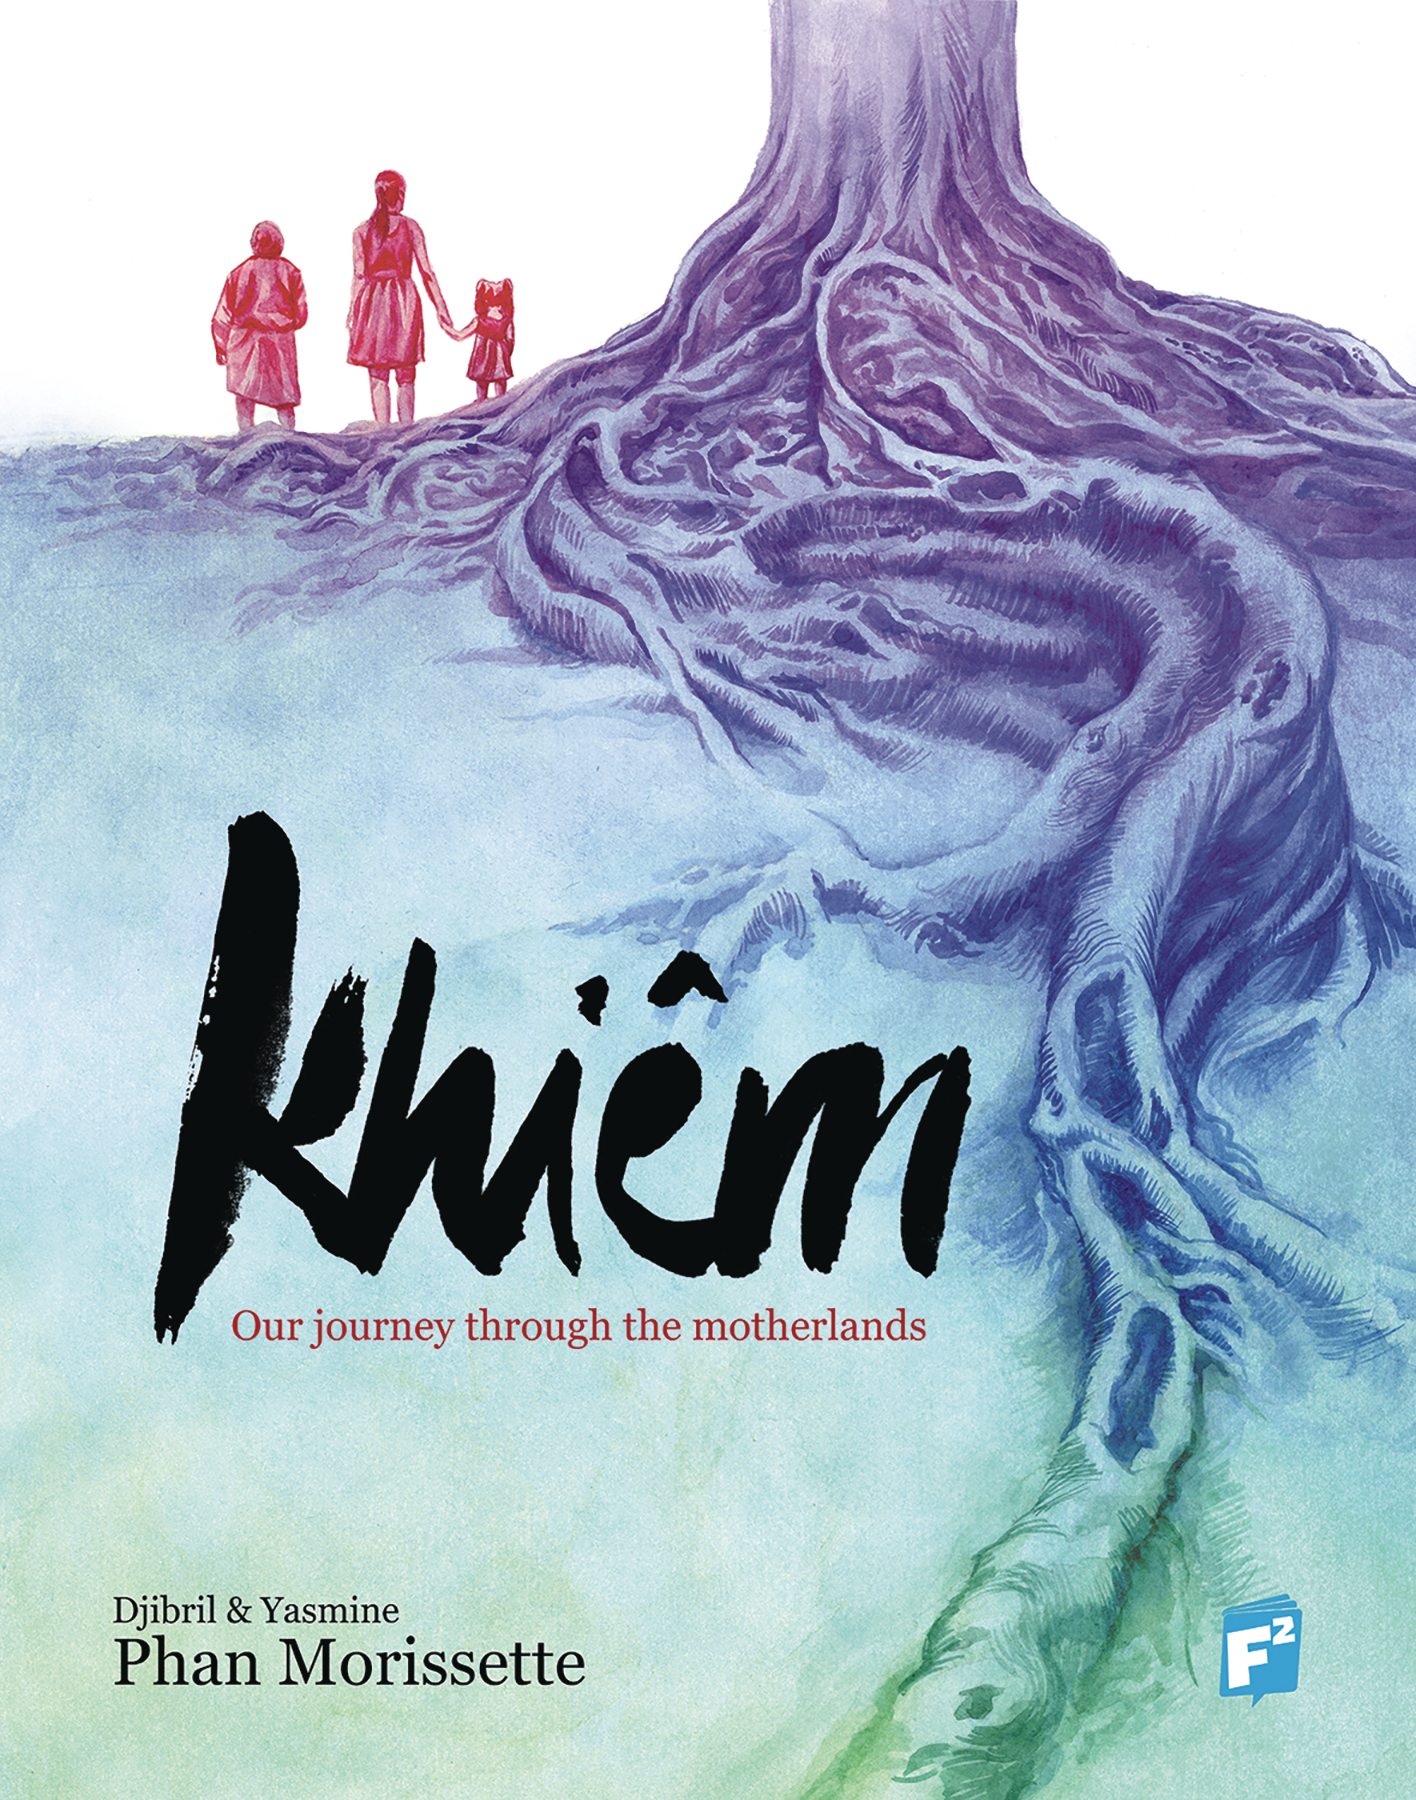 Khiem Graphic Novel